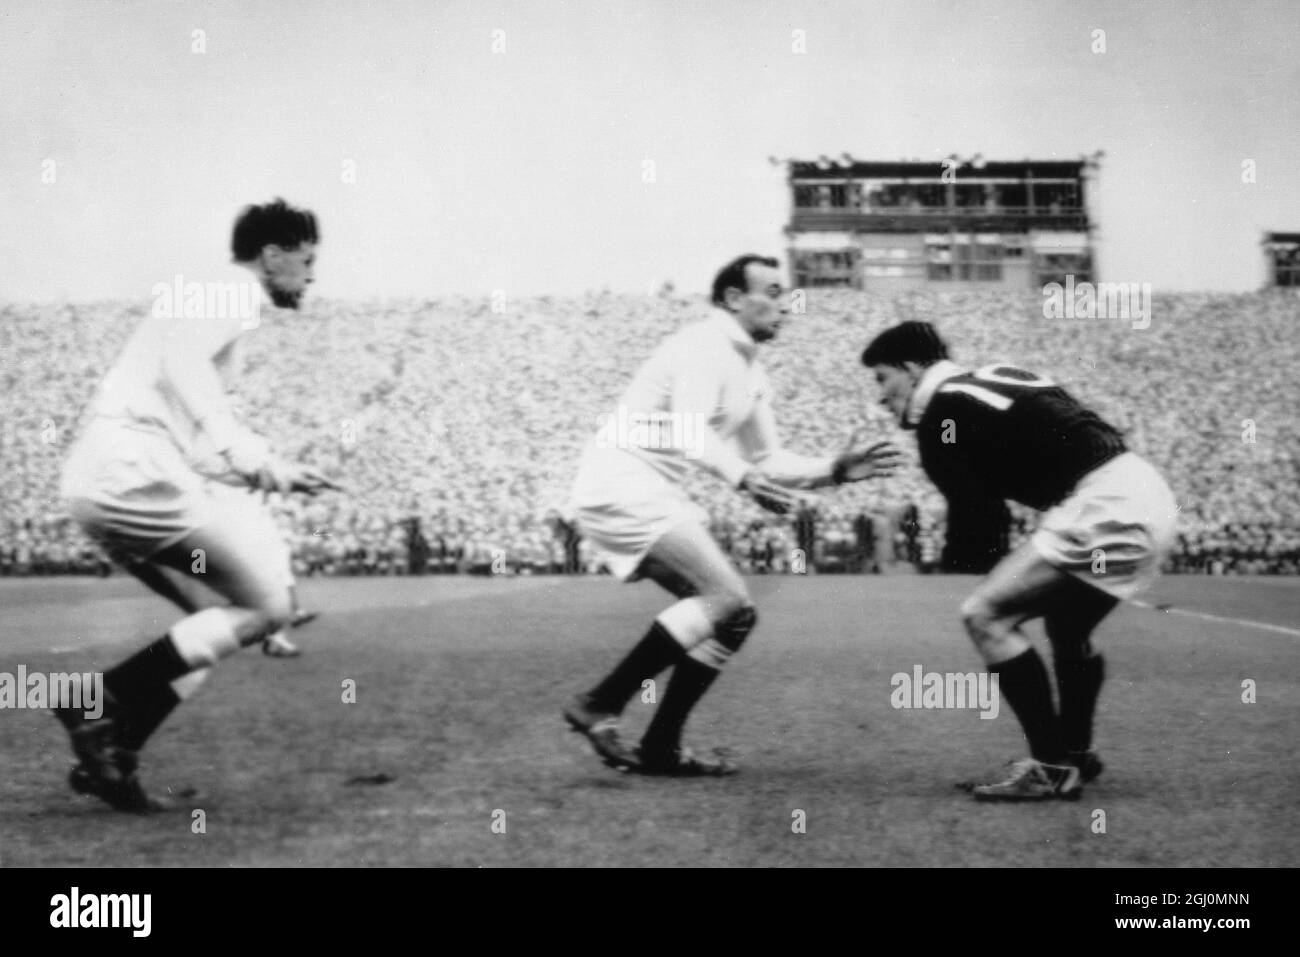 G H Waddell auf der rechten Seite bereitet sich darauf vor, einen Tackle von P G Robbins aus England während des internationalen Rugby-Union-Spiels am 17. März 1962 in Murrayfield zwischen England und Schottland auszuspielen Stockfoto